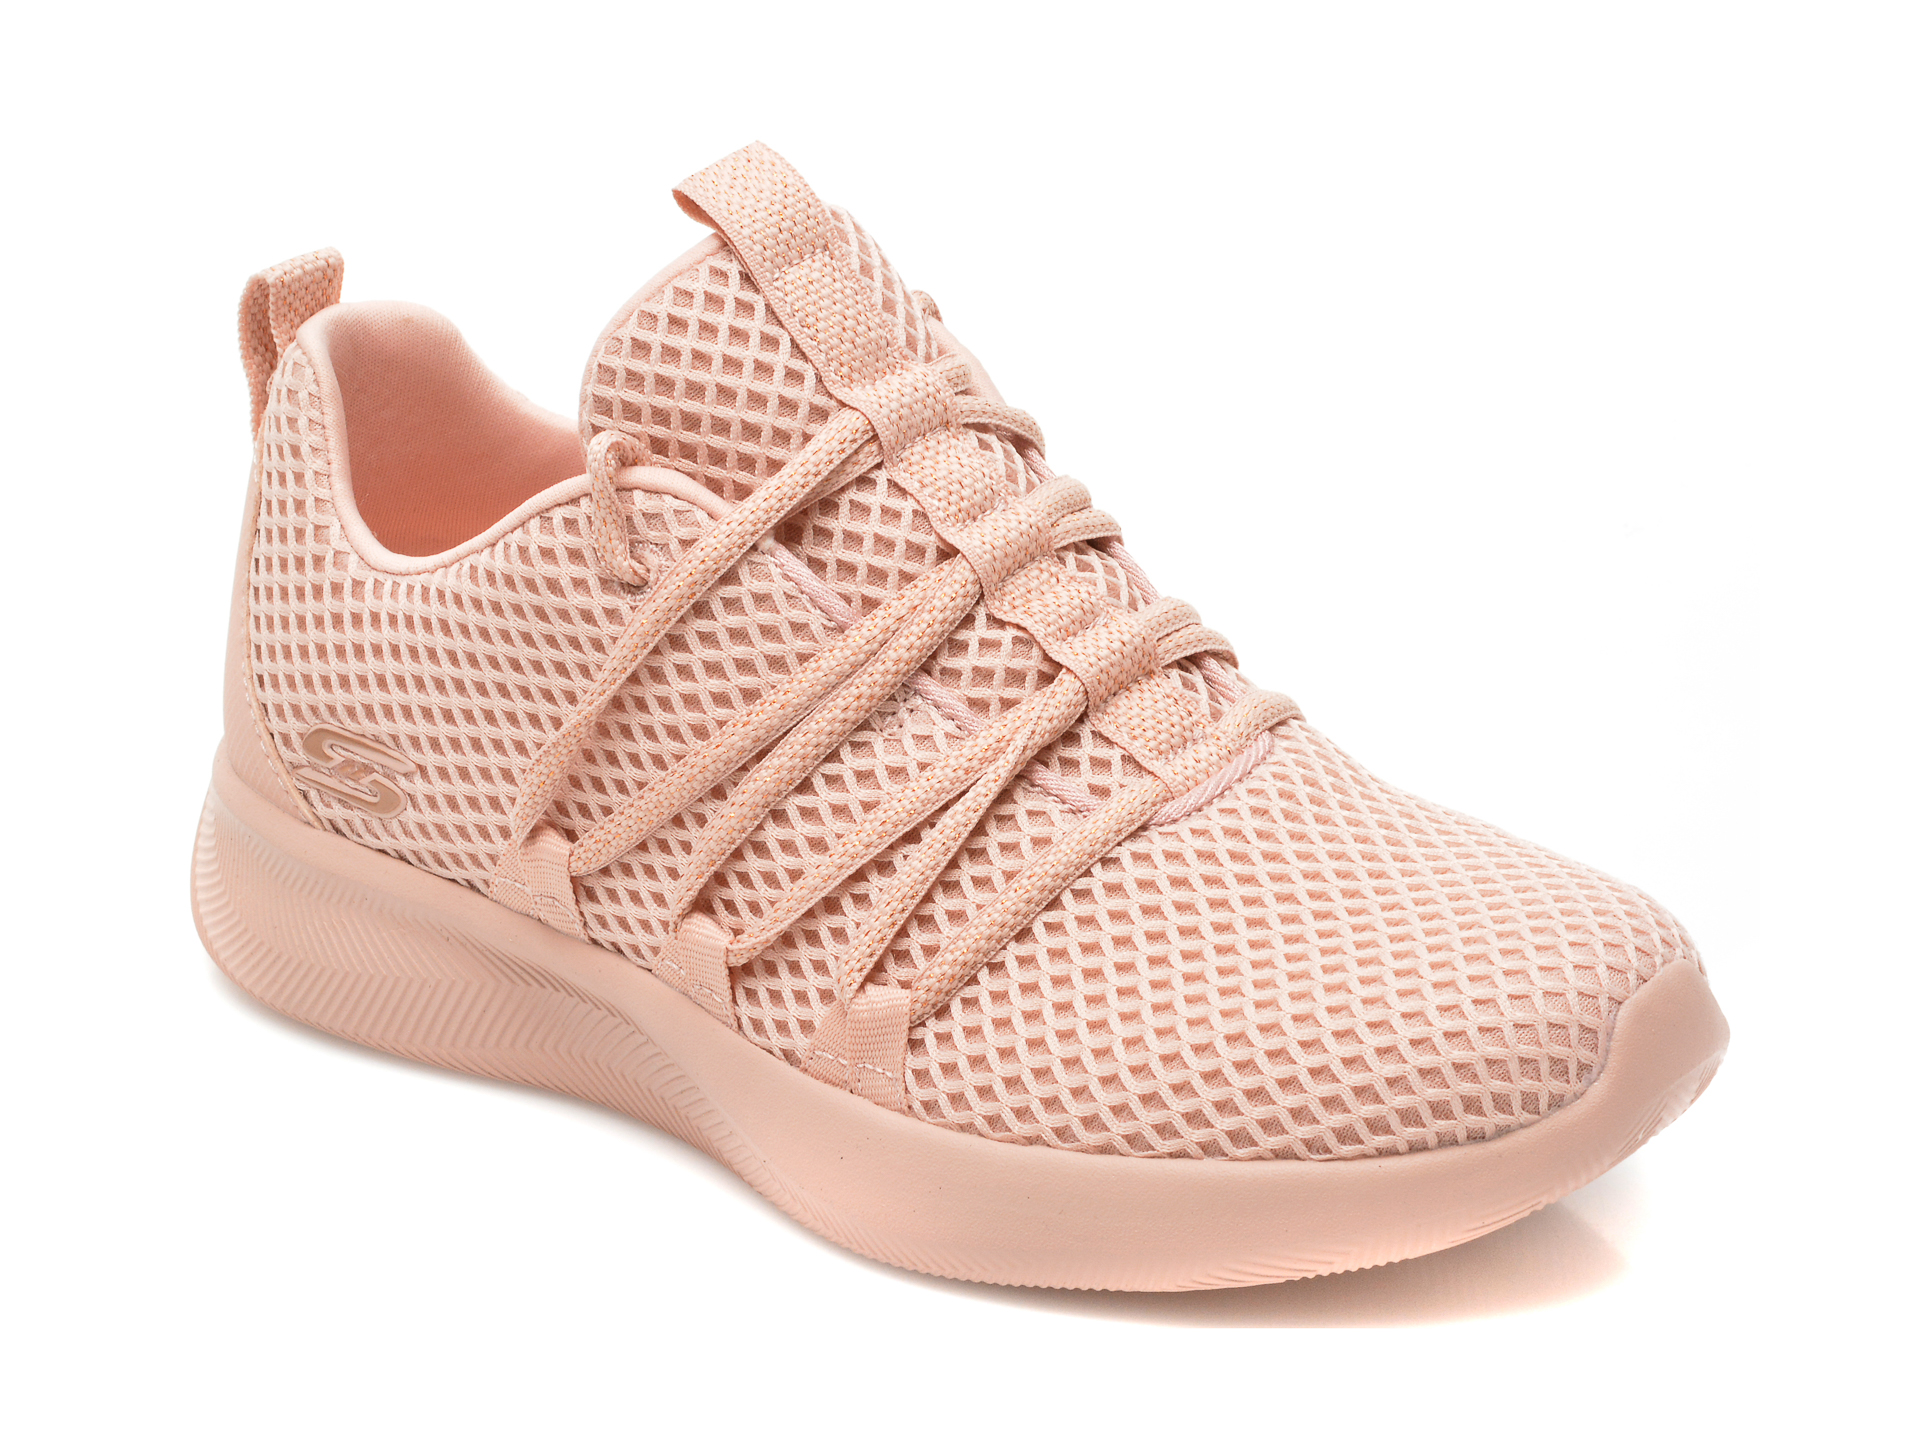 Pantofi SKECHERS roz, BOBS SQUAD 2, din material textil Skechers imagine noua